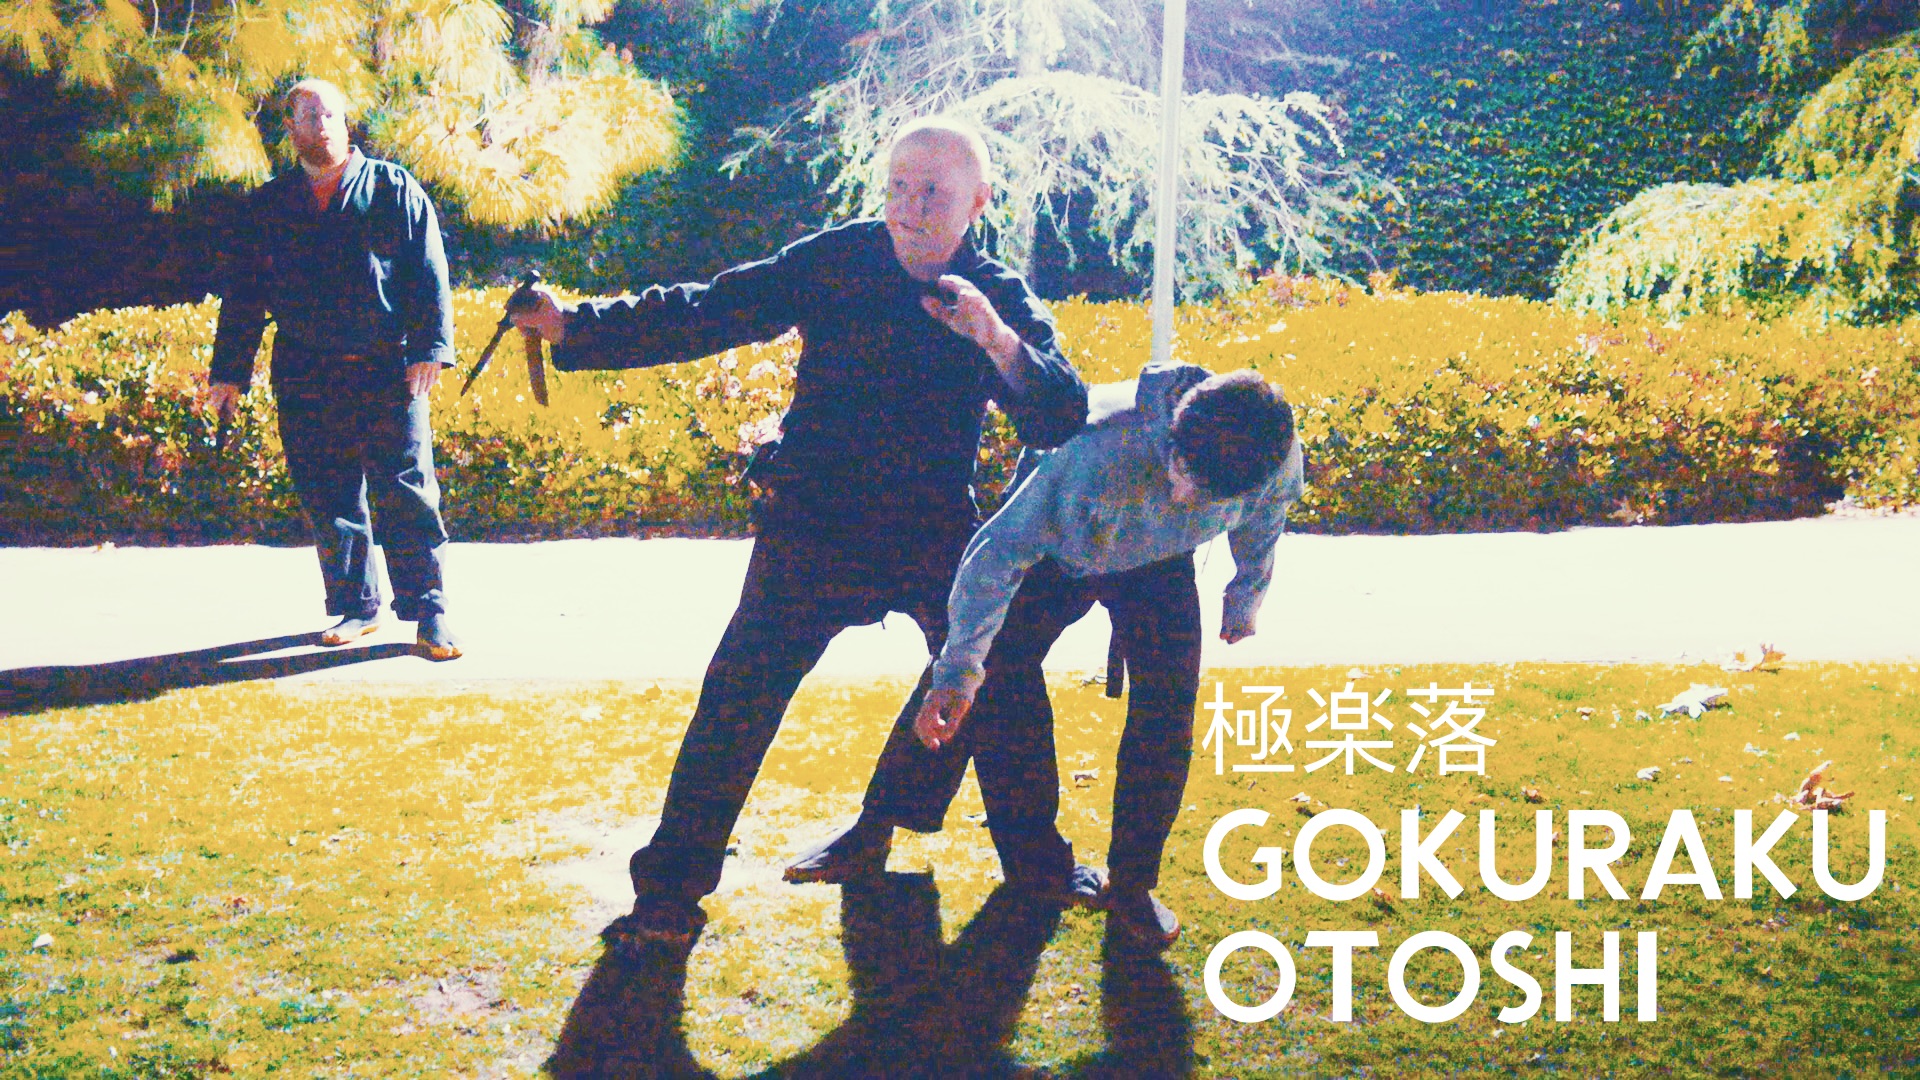 VIDEO: Bujinkan Kata 極楽落 Gokuraku Otoshi